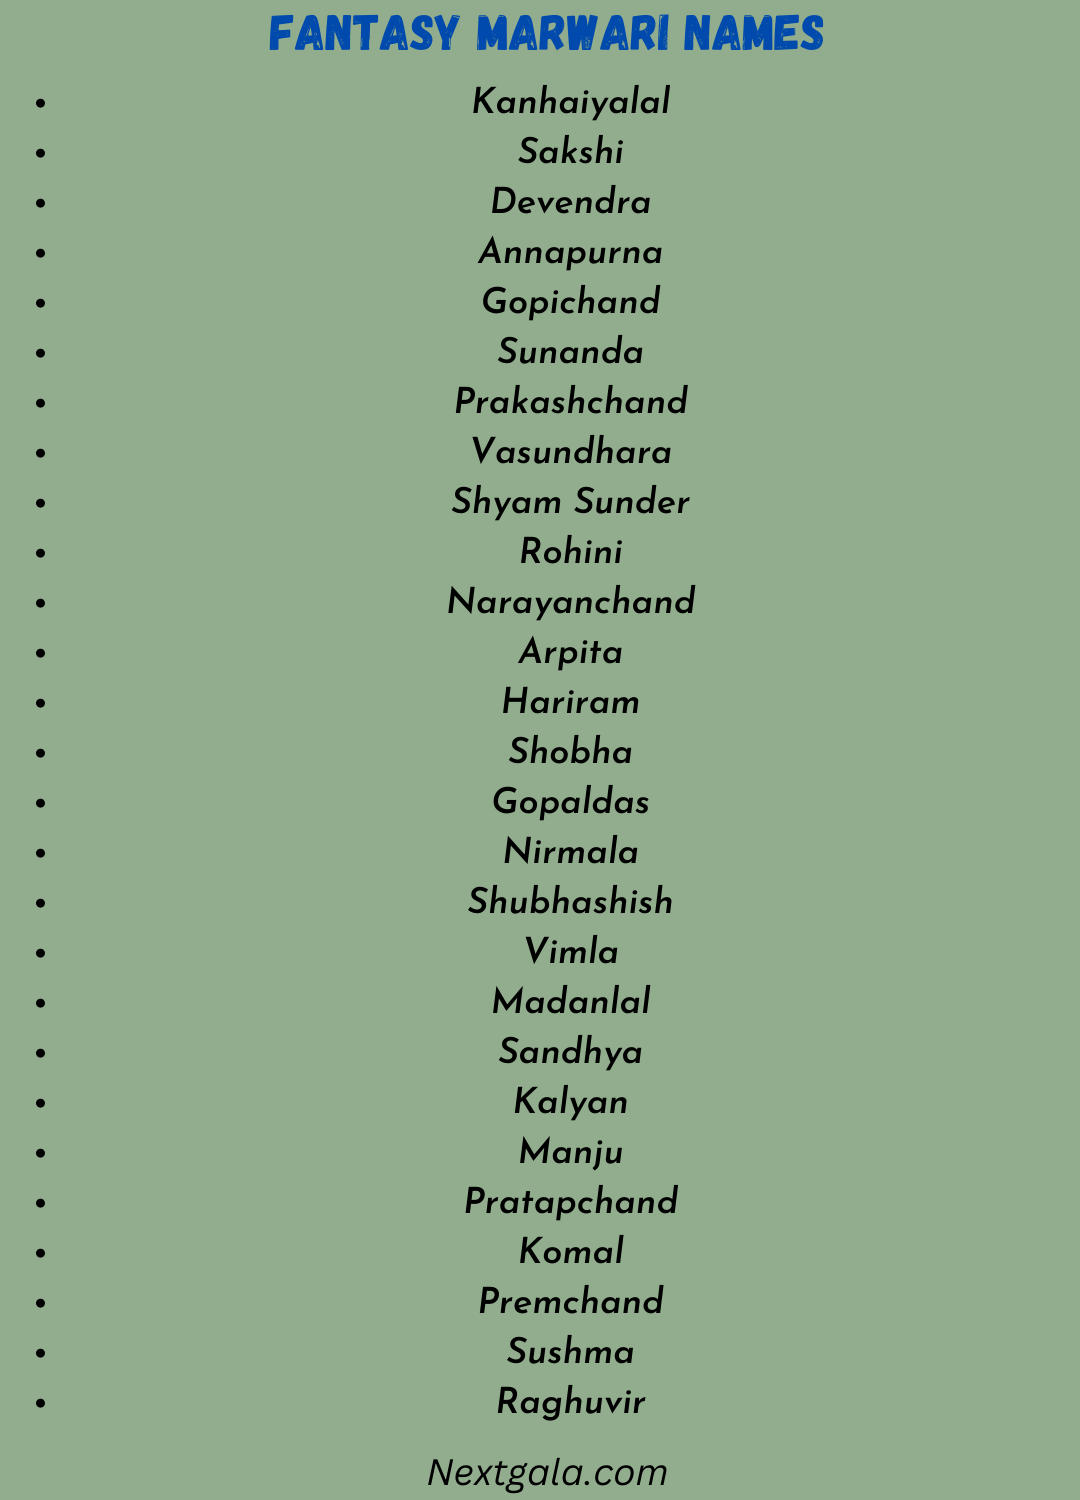 Marwari Names 